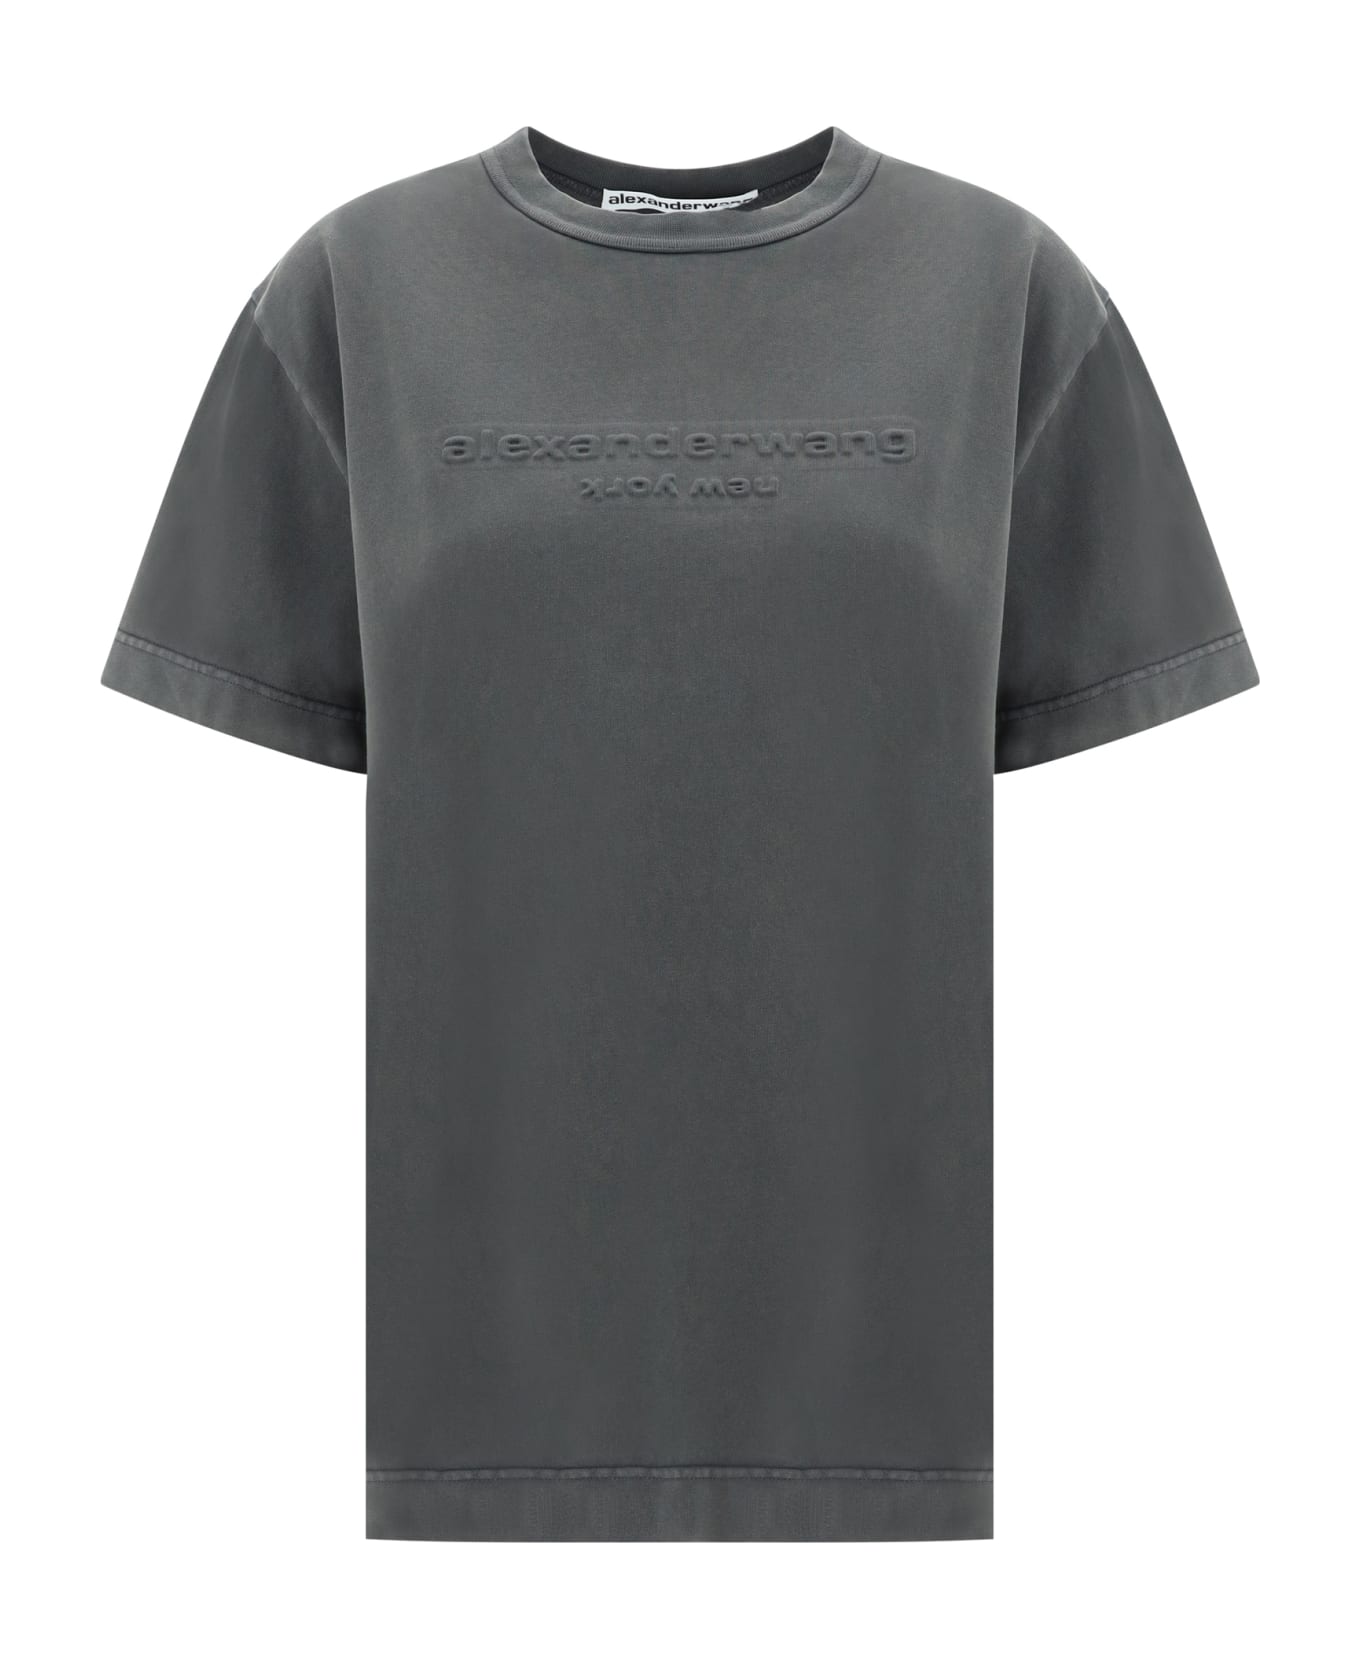 Alexander Wang T-shirt Tシャツ